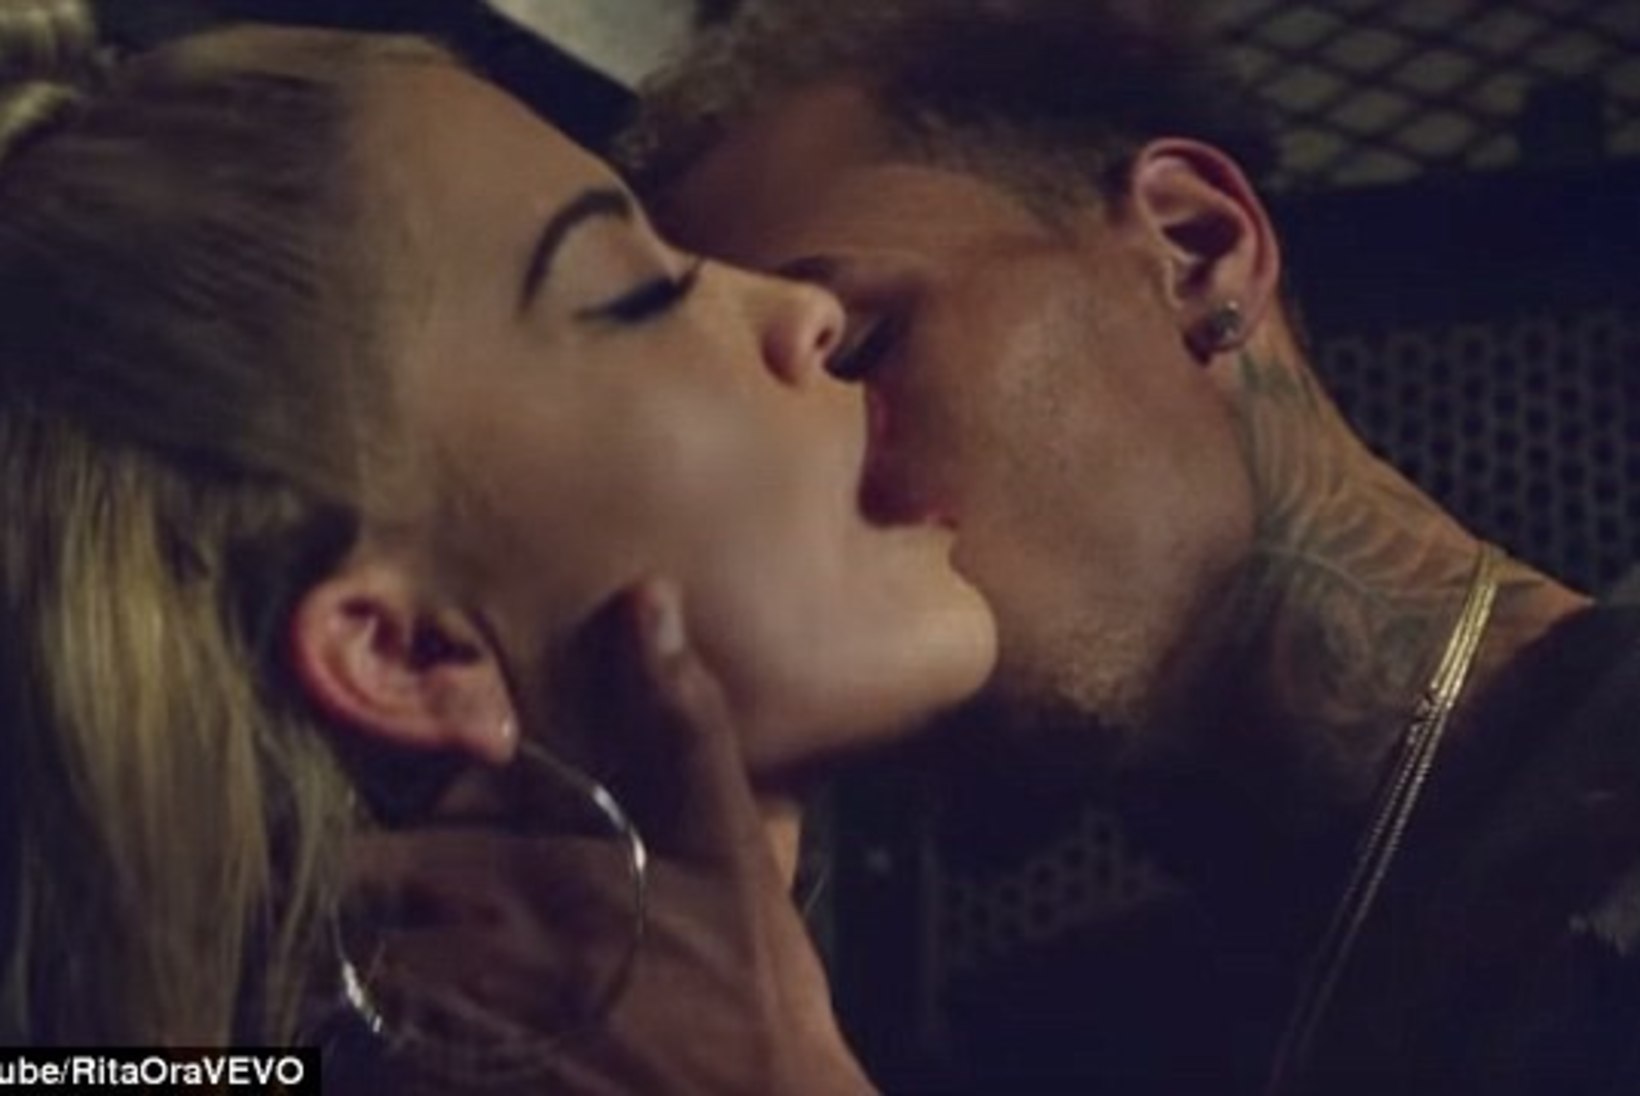 ÜLIKUUM! Topless Rita Ora hõõrub end uues muusikavideos palja ülakehaga Chris Browni vastu!